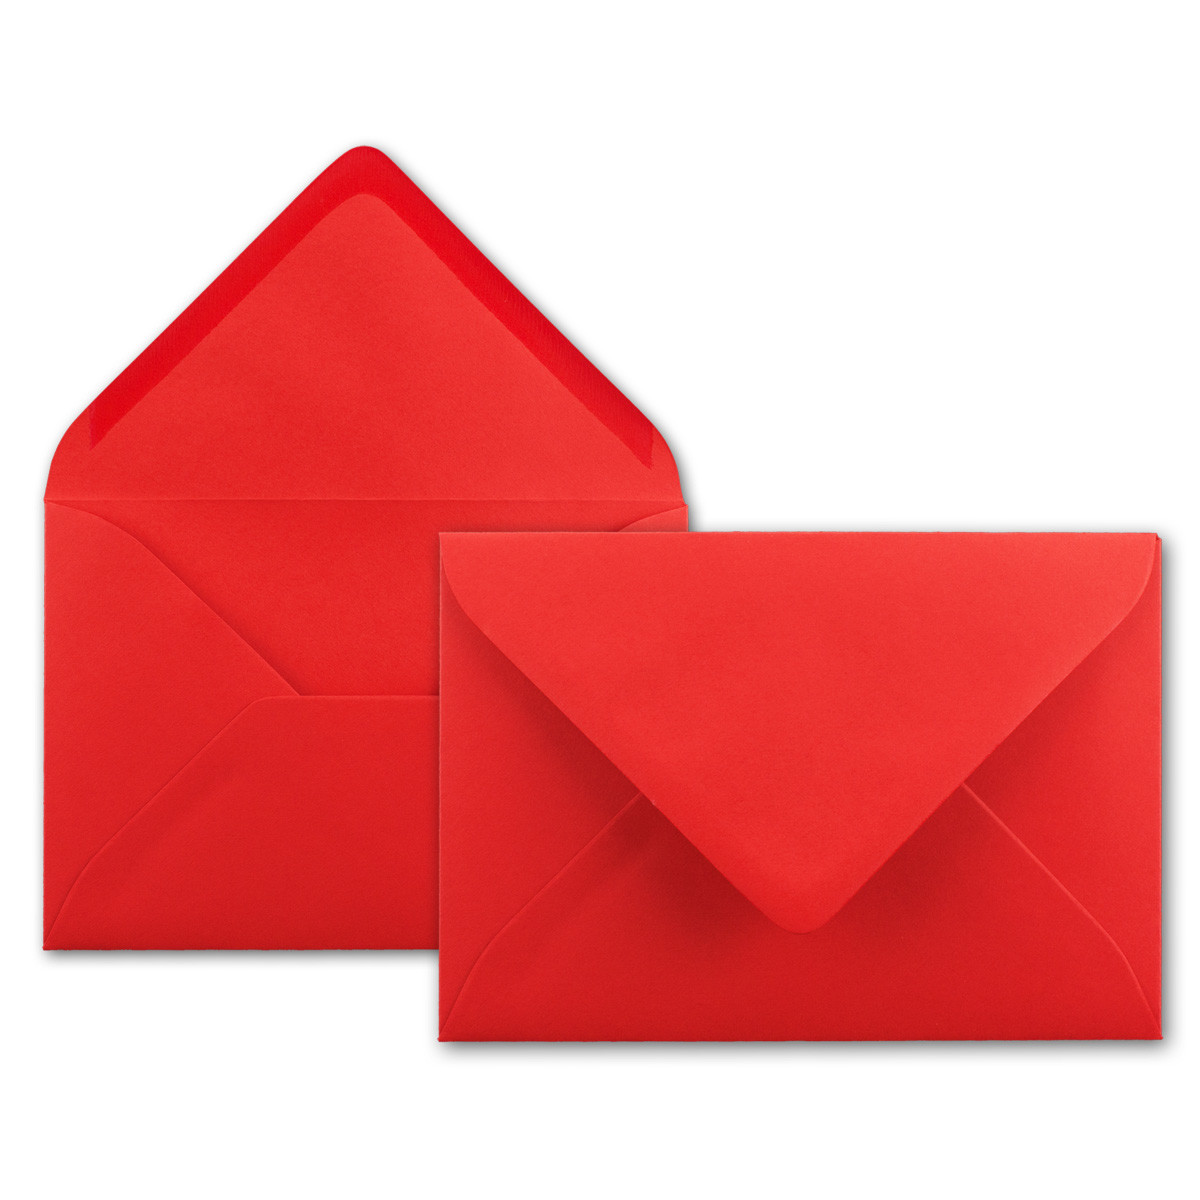 80 g//m/² Kuverts in DIN B6 Format 12,5 x 17,6 cm Nassklebung ohne Fenster 25x Brief-Umschl/äge leuchtendes Rot